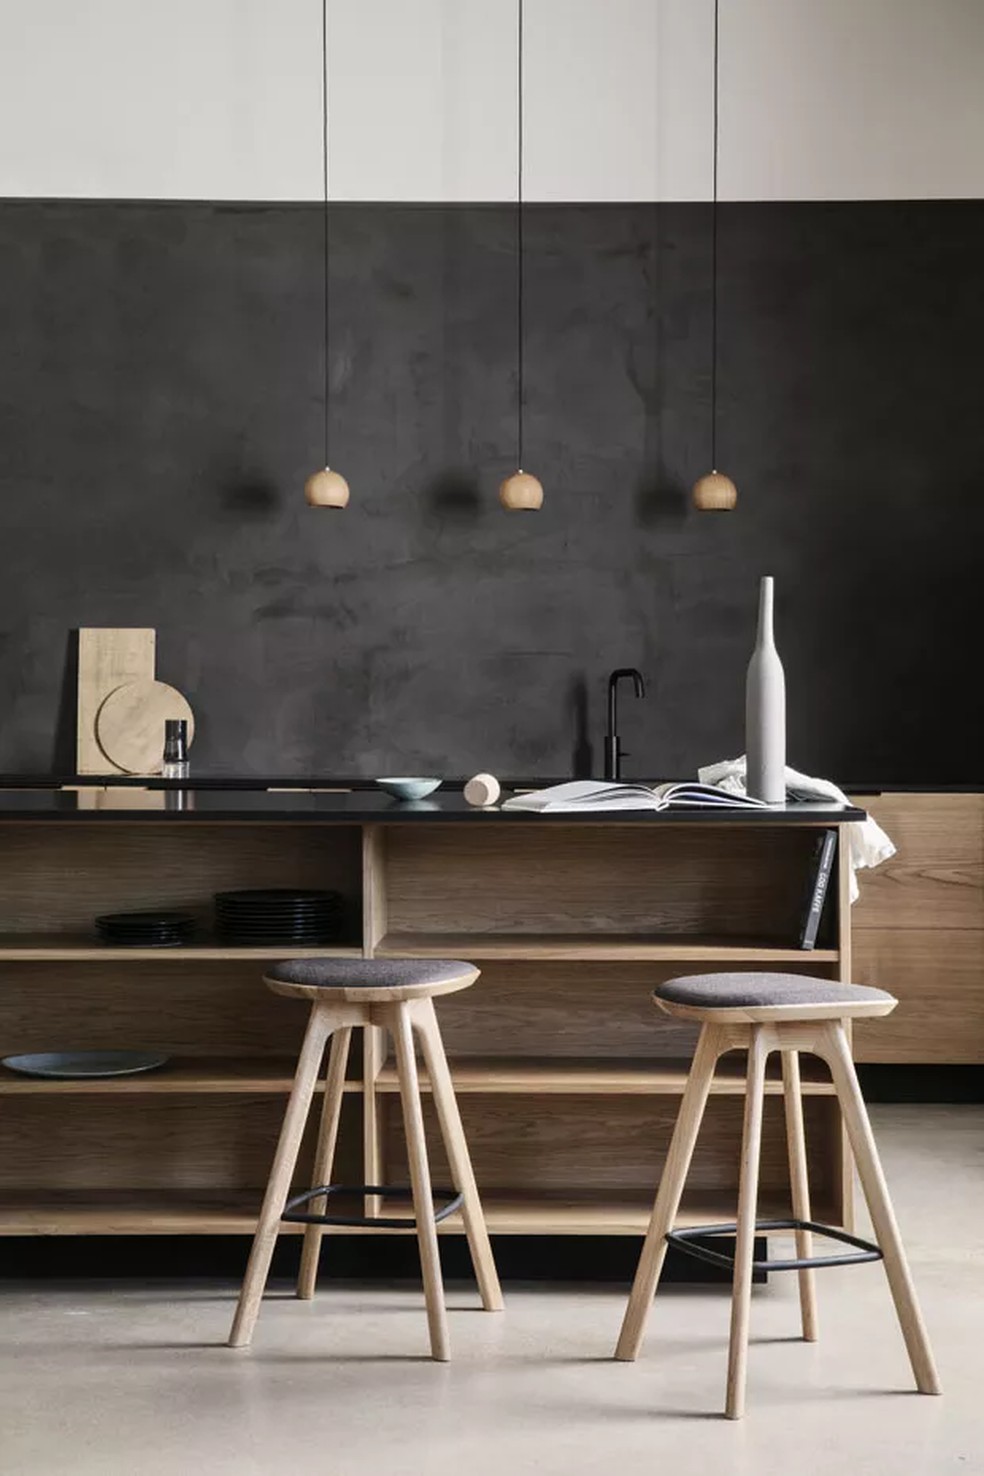 Os tons neutros e as formas limpas predominam no décor desta cozinha minimalista integrada à sala de jantar. O projeto foi criado pela marca dinamarquesa Brdr. Krüger — Foto: Divulgação/ Brdr. Krüger